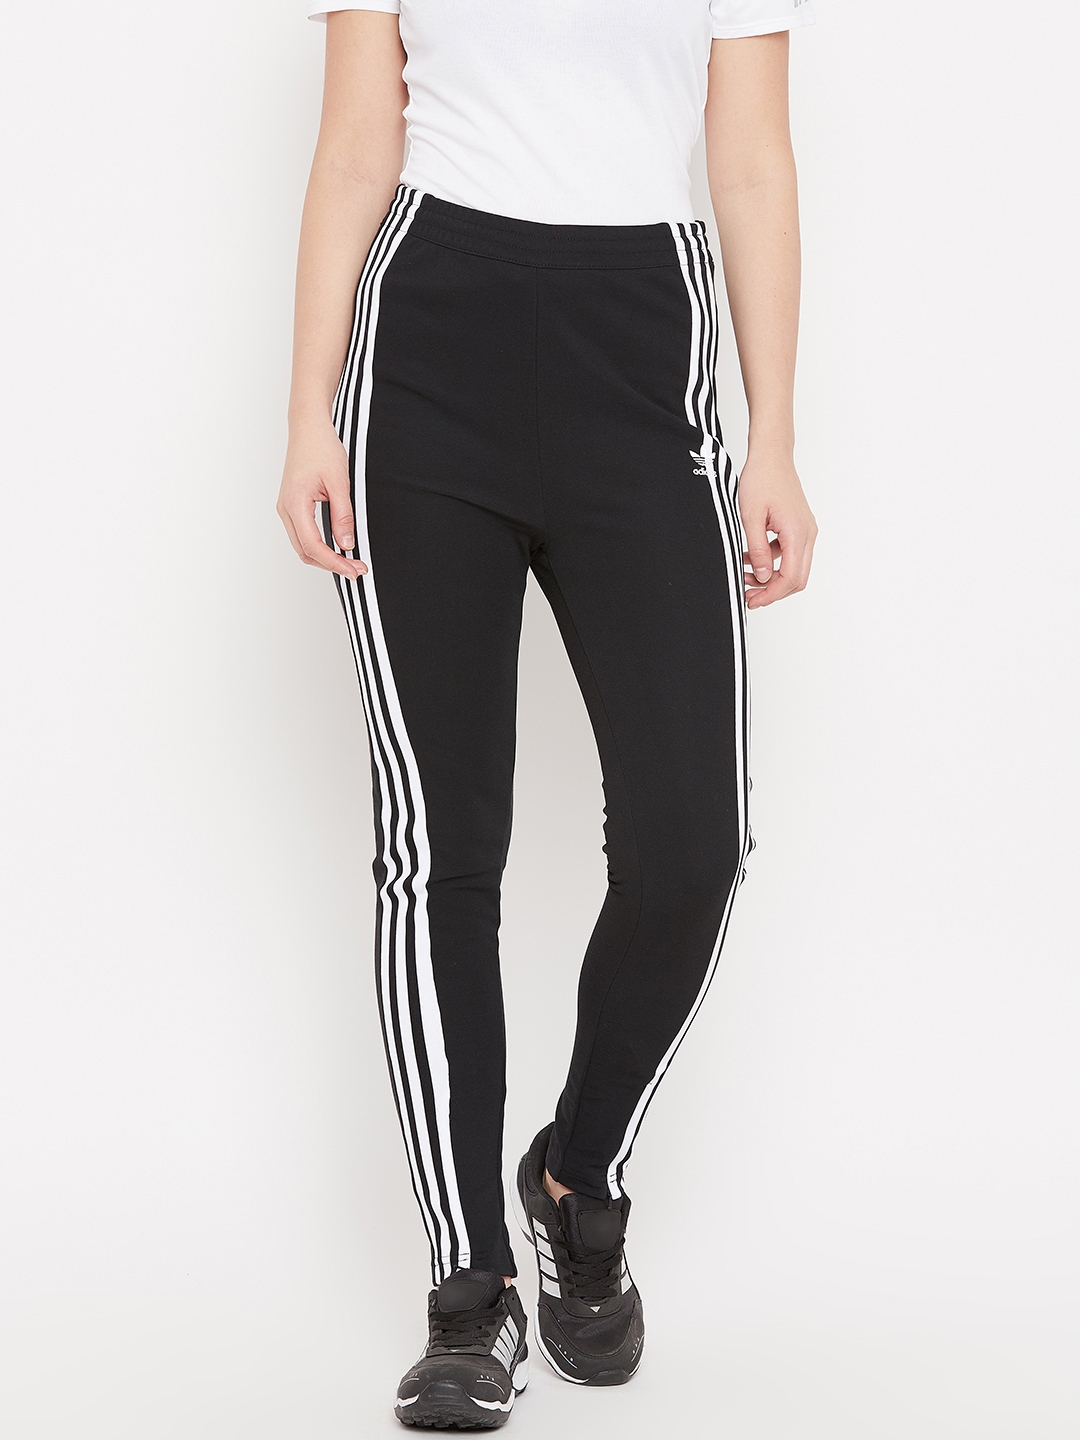 Adidas Yoga Pants